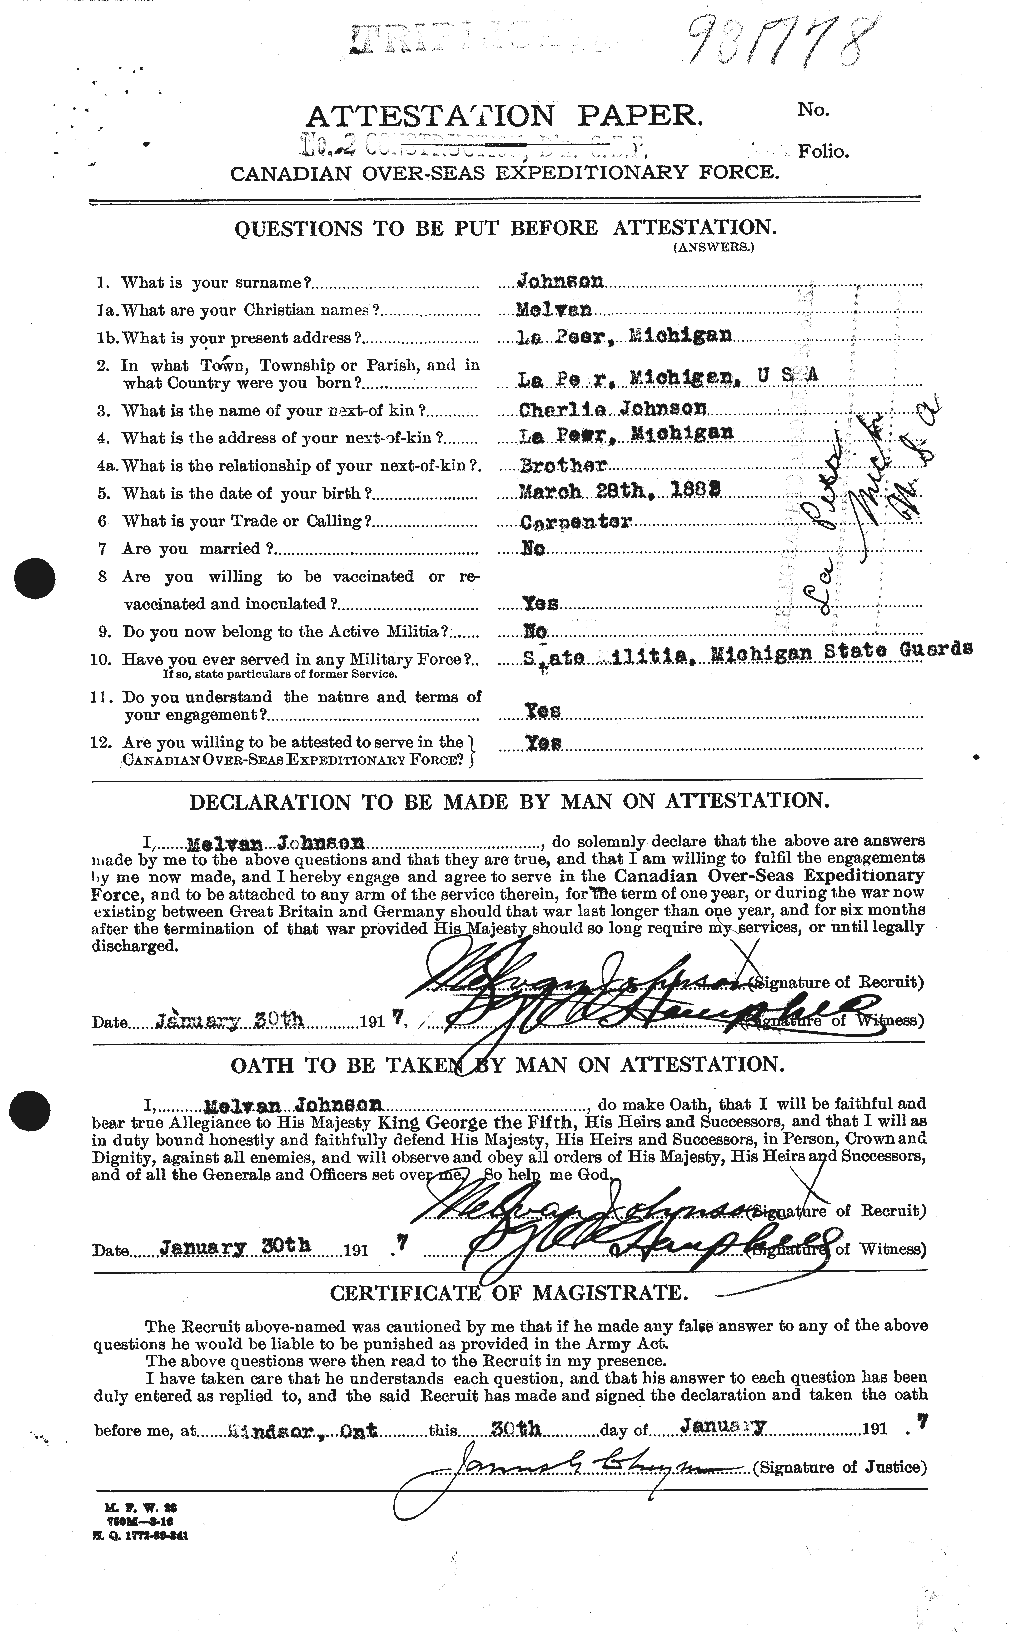 Dossiers du Personnel de la Première Guerre mondiale - CEC 422137a